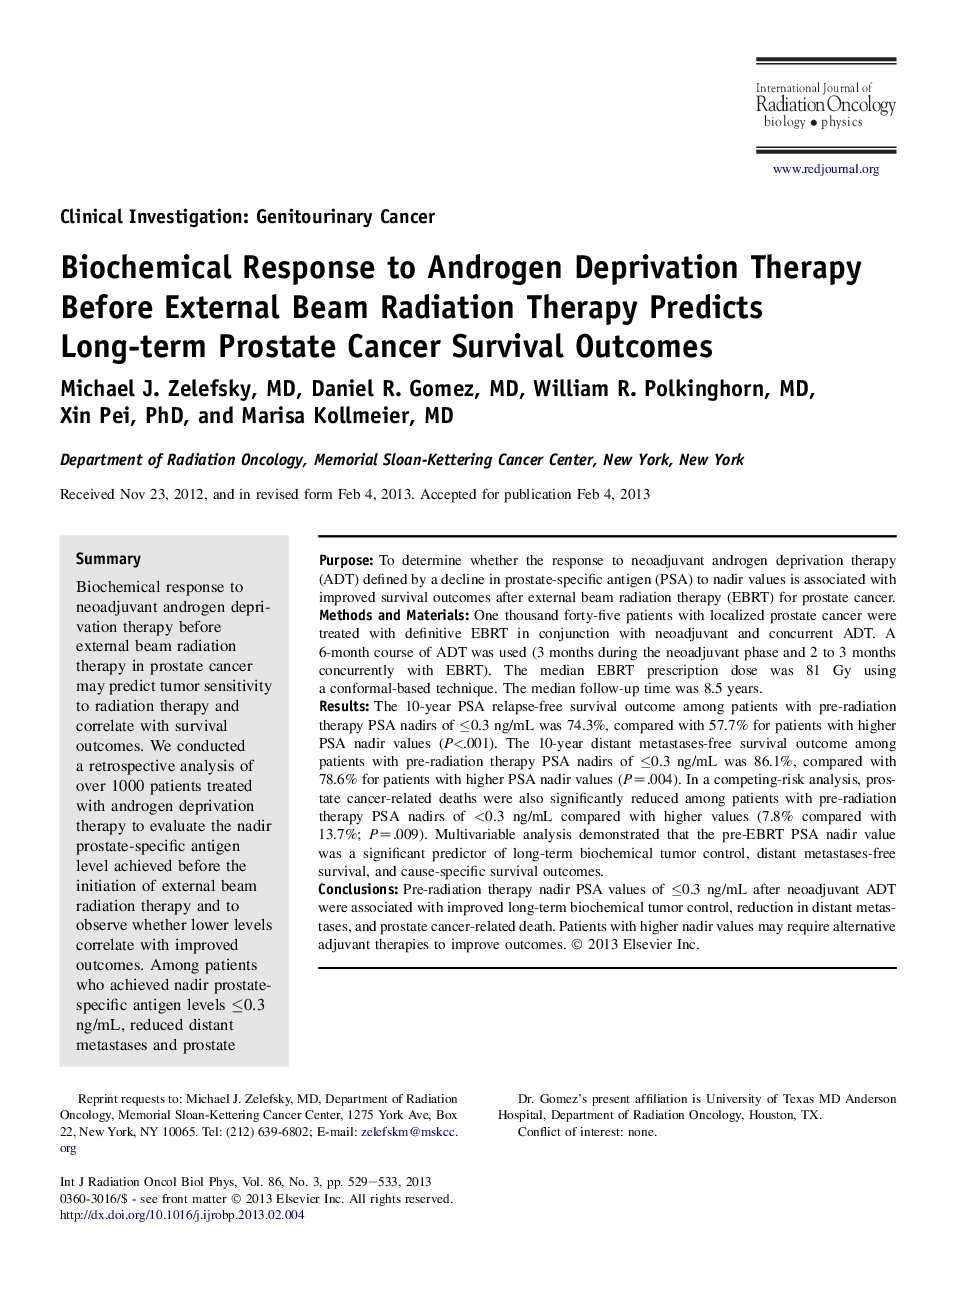 پاسخ بیوشیمیایی به درمان رحم آندروژن قبل از درمان تابش پرتوهای پرتو پیش بینی نتایج بلندمدت سرطان پروستات 